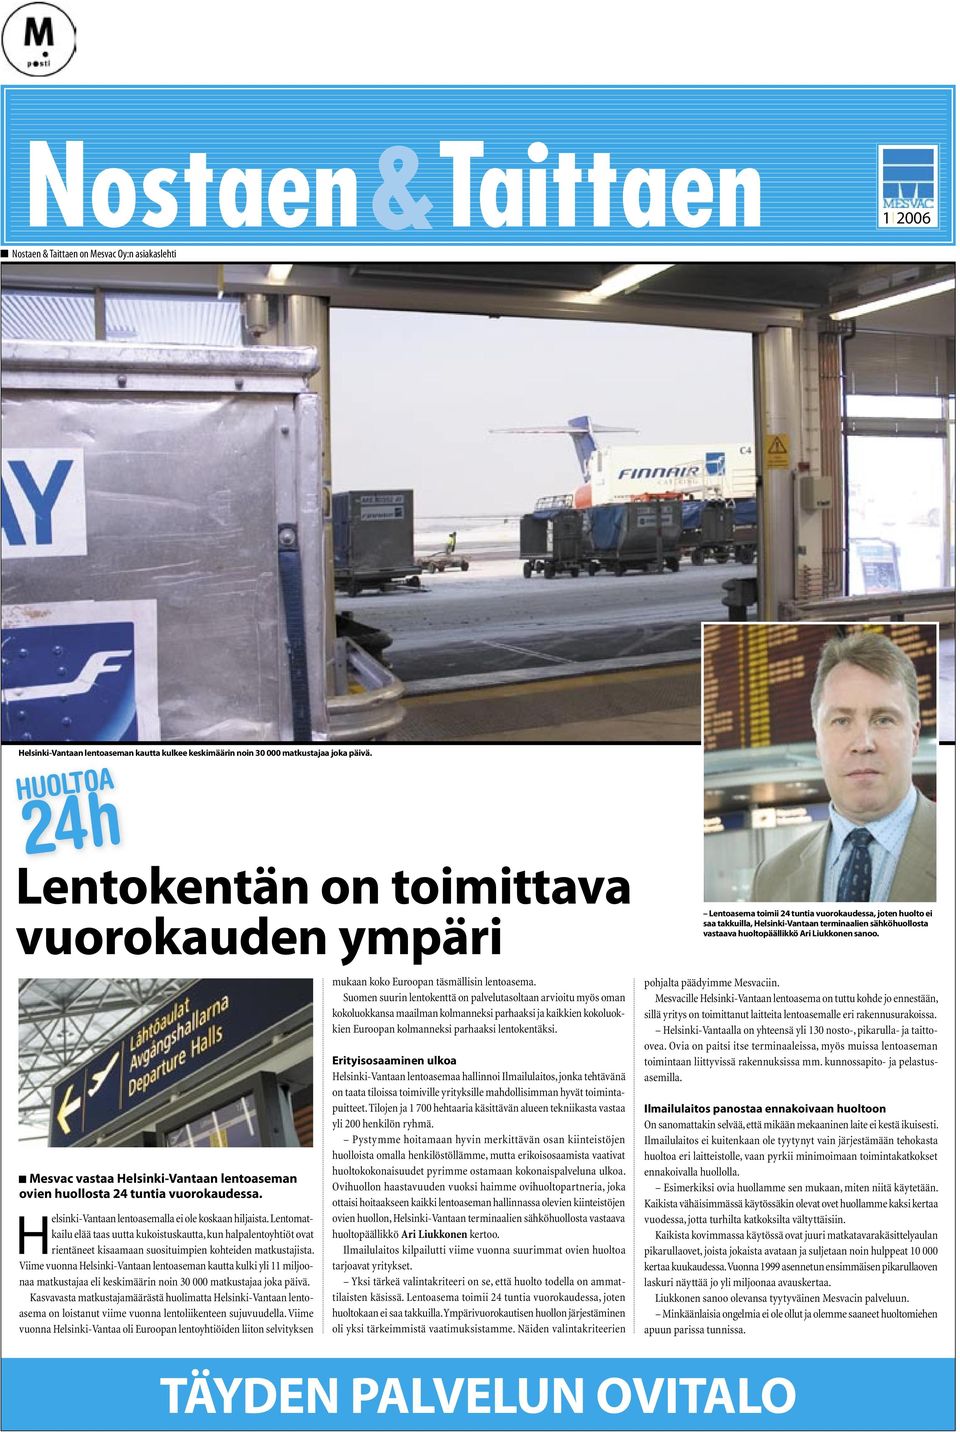 Liukkonen sanoo. Mesvac vastaa Helsinki-Vantaan lentoaseman ovien huollosta 24 tuntia vuorokaudessa. Helsinki-Vantaan lentoasemalla ei ole koskaan hiljaista.